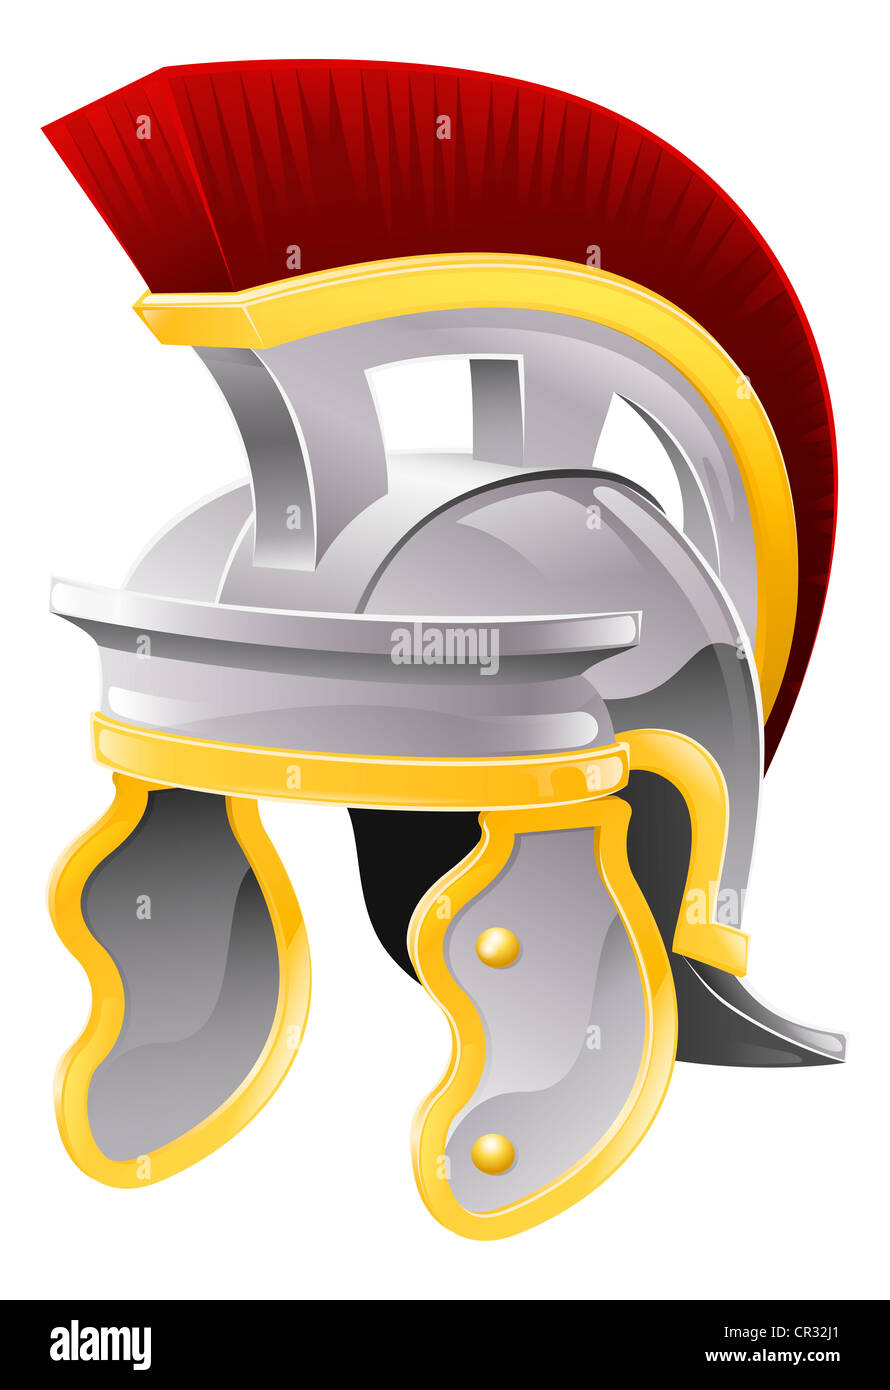 Illustration de soldat romain casque style la galea avec crête rouge Banque D'Images